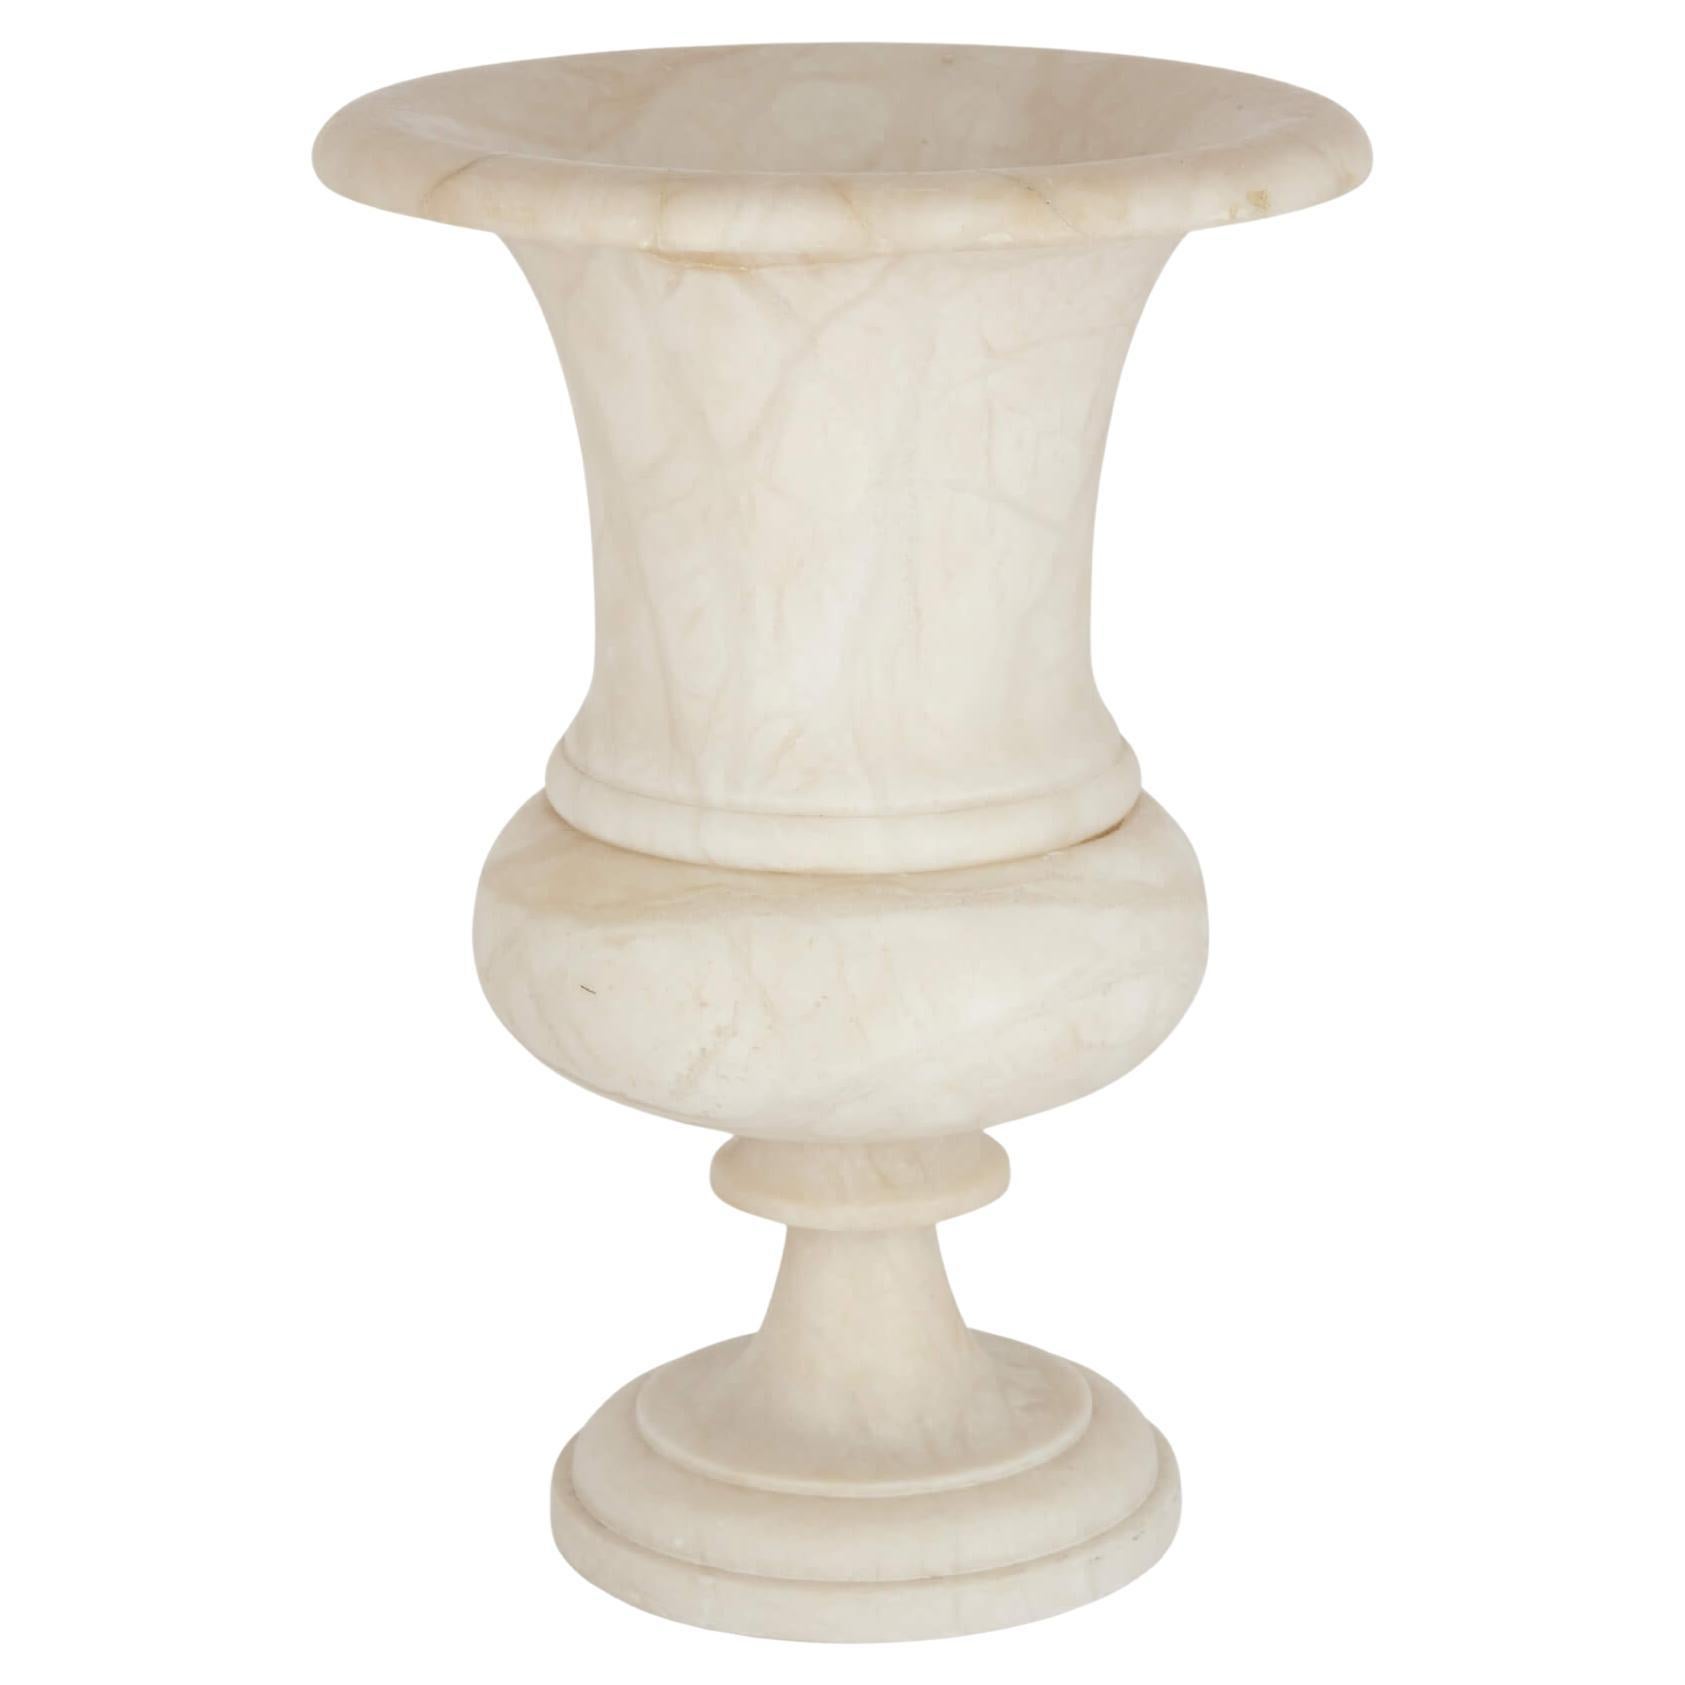 Große neoklassizistische Vase aus Alabaster in Campagna-Form